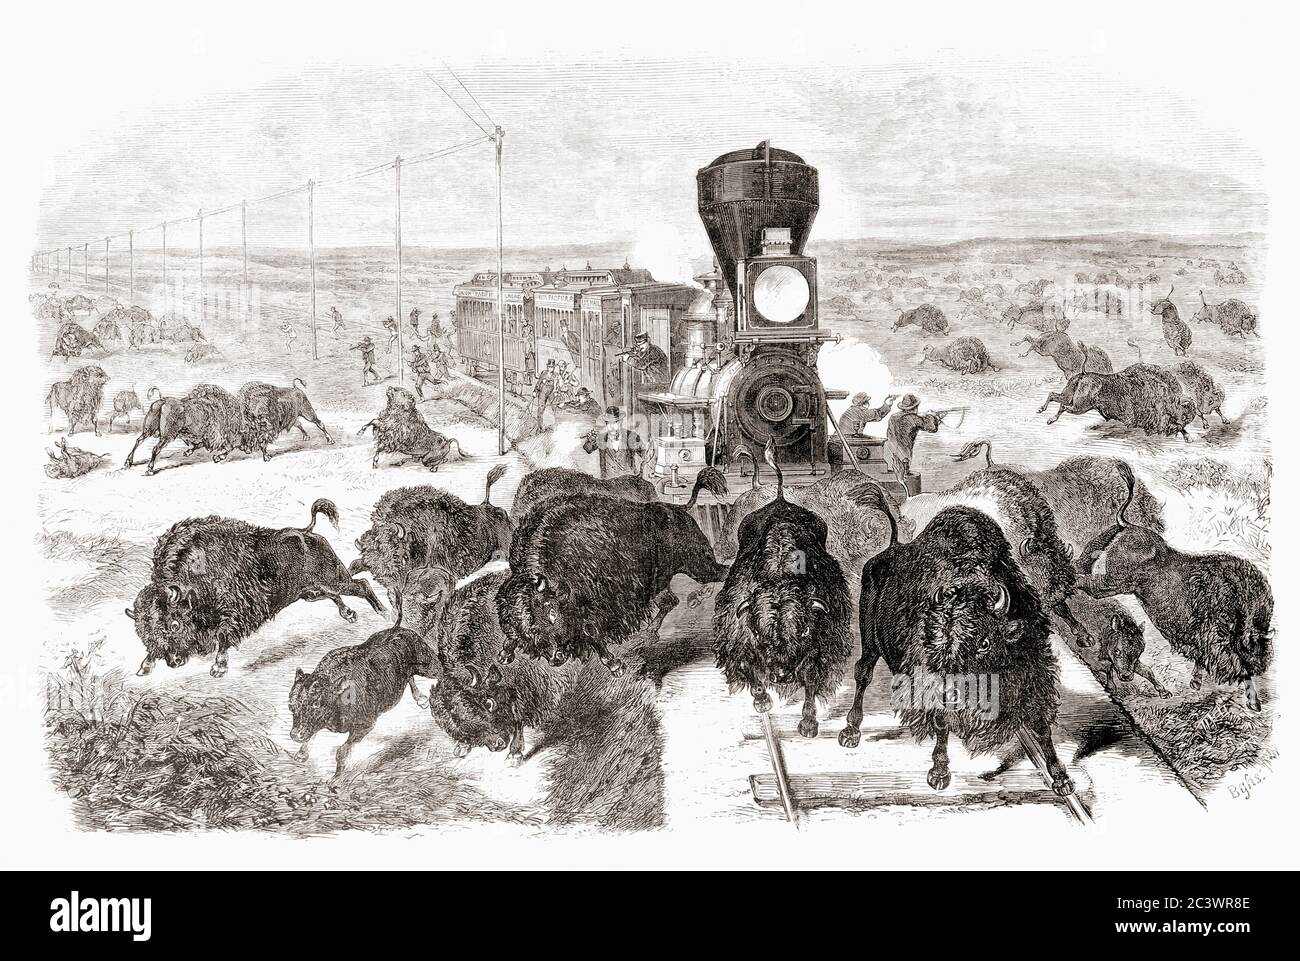 Büffelschießen auf der Kansas-Pacific Railroad Linie. Nach einem Werk eines unbekannten Künstlers, das in der Ausgabe von Frank Leslie's Illustrated Zeitung vom 3. Juni 1871 erschien. Die Massenschlachtung von Büffeln in den USA reduzierte die Wildherden von zig Millionen auf das beinahe Aussterben. Dieses Bild spiegelt die Werbung der Eisenbahngesellschaften wider, dass ein Passagier „auf der Schiene jagen“ könnte. Stockfoto